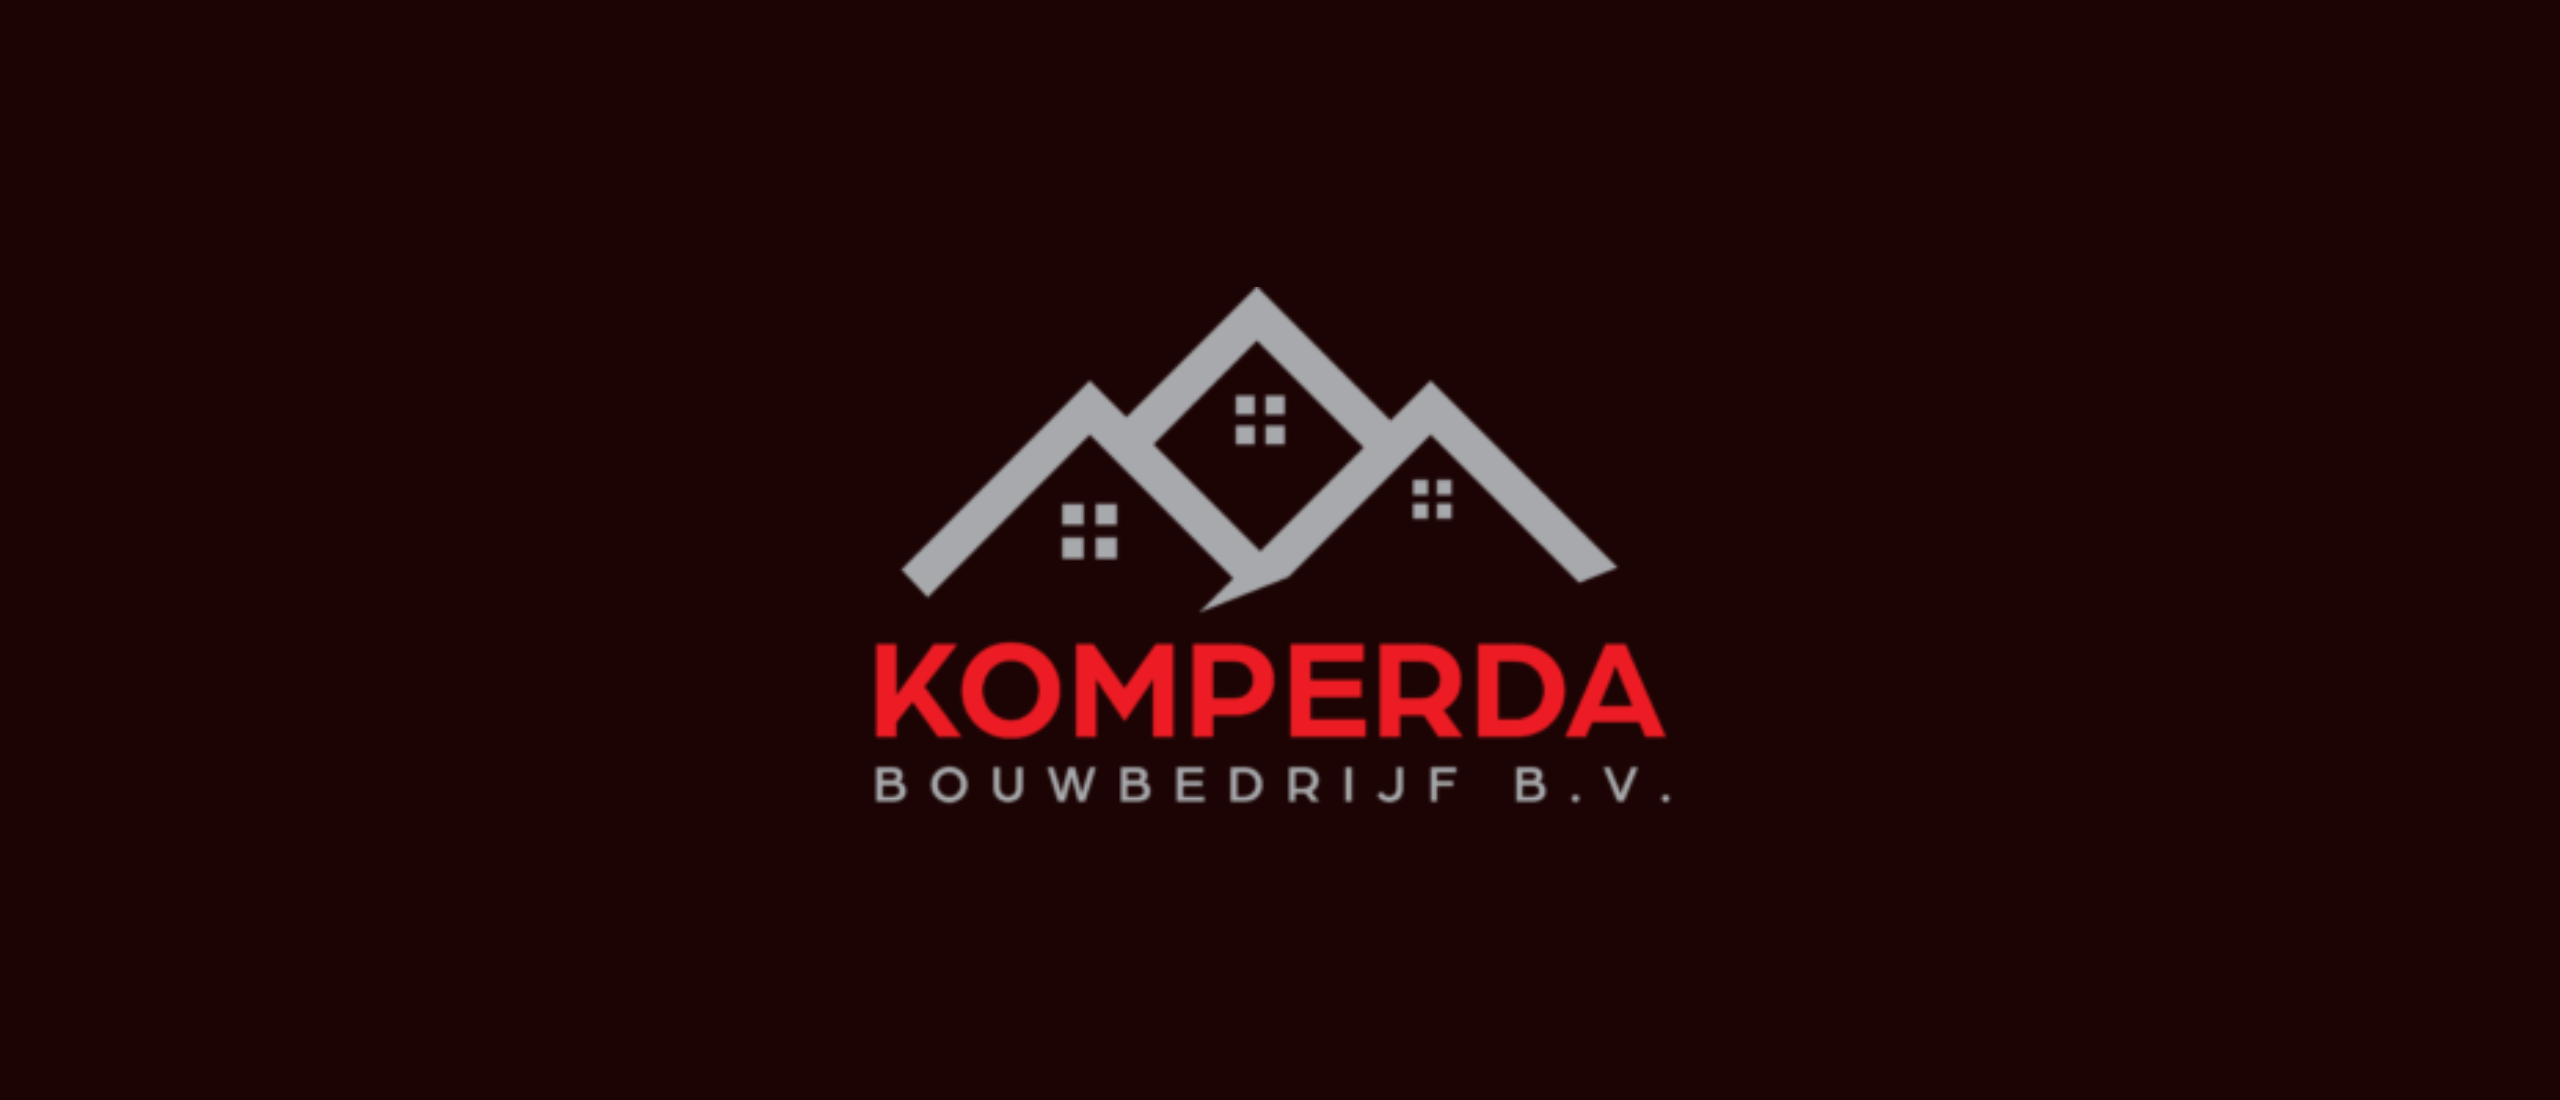 Komperda Bouwbedrijf: Van klusjesman tot allround bouwbedrijf in Deventer